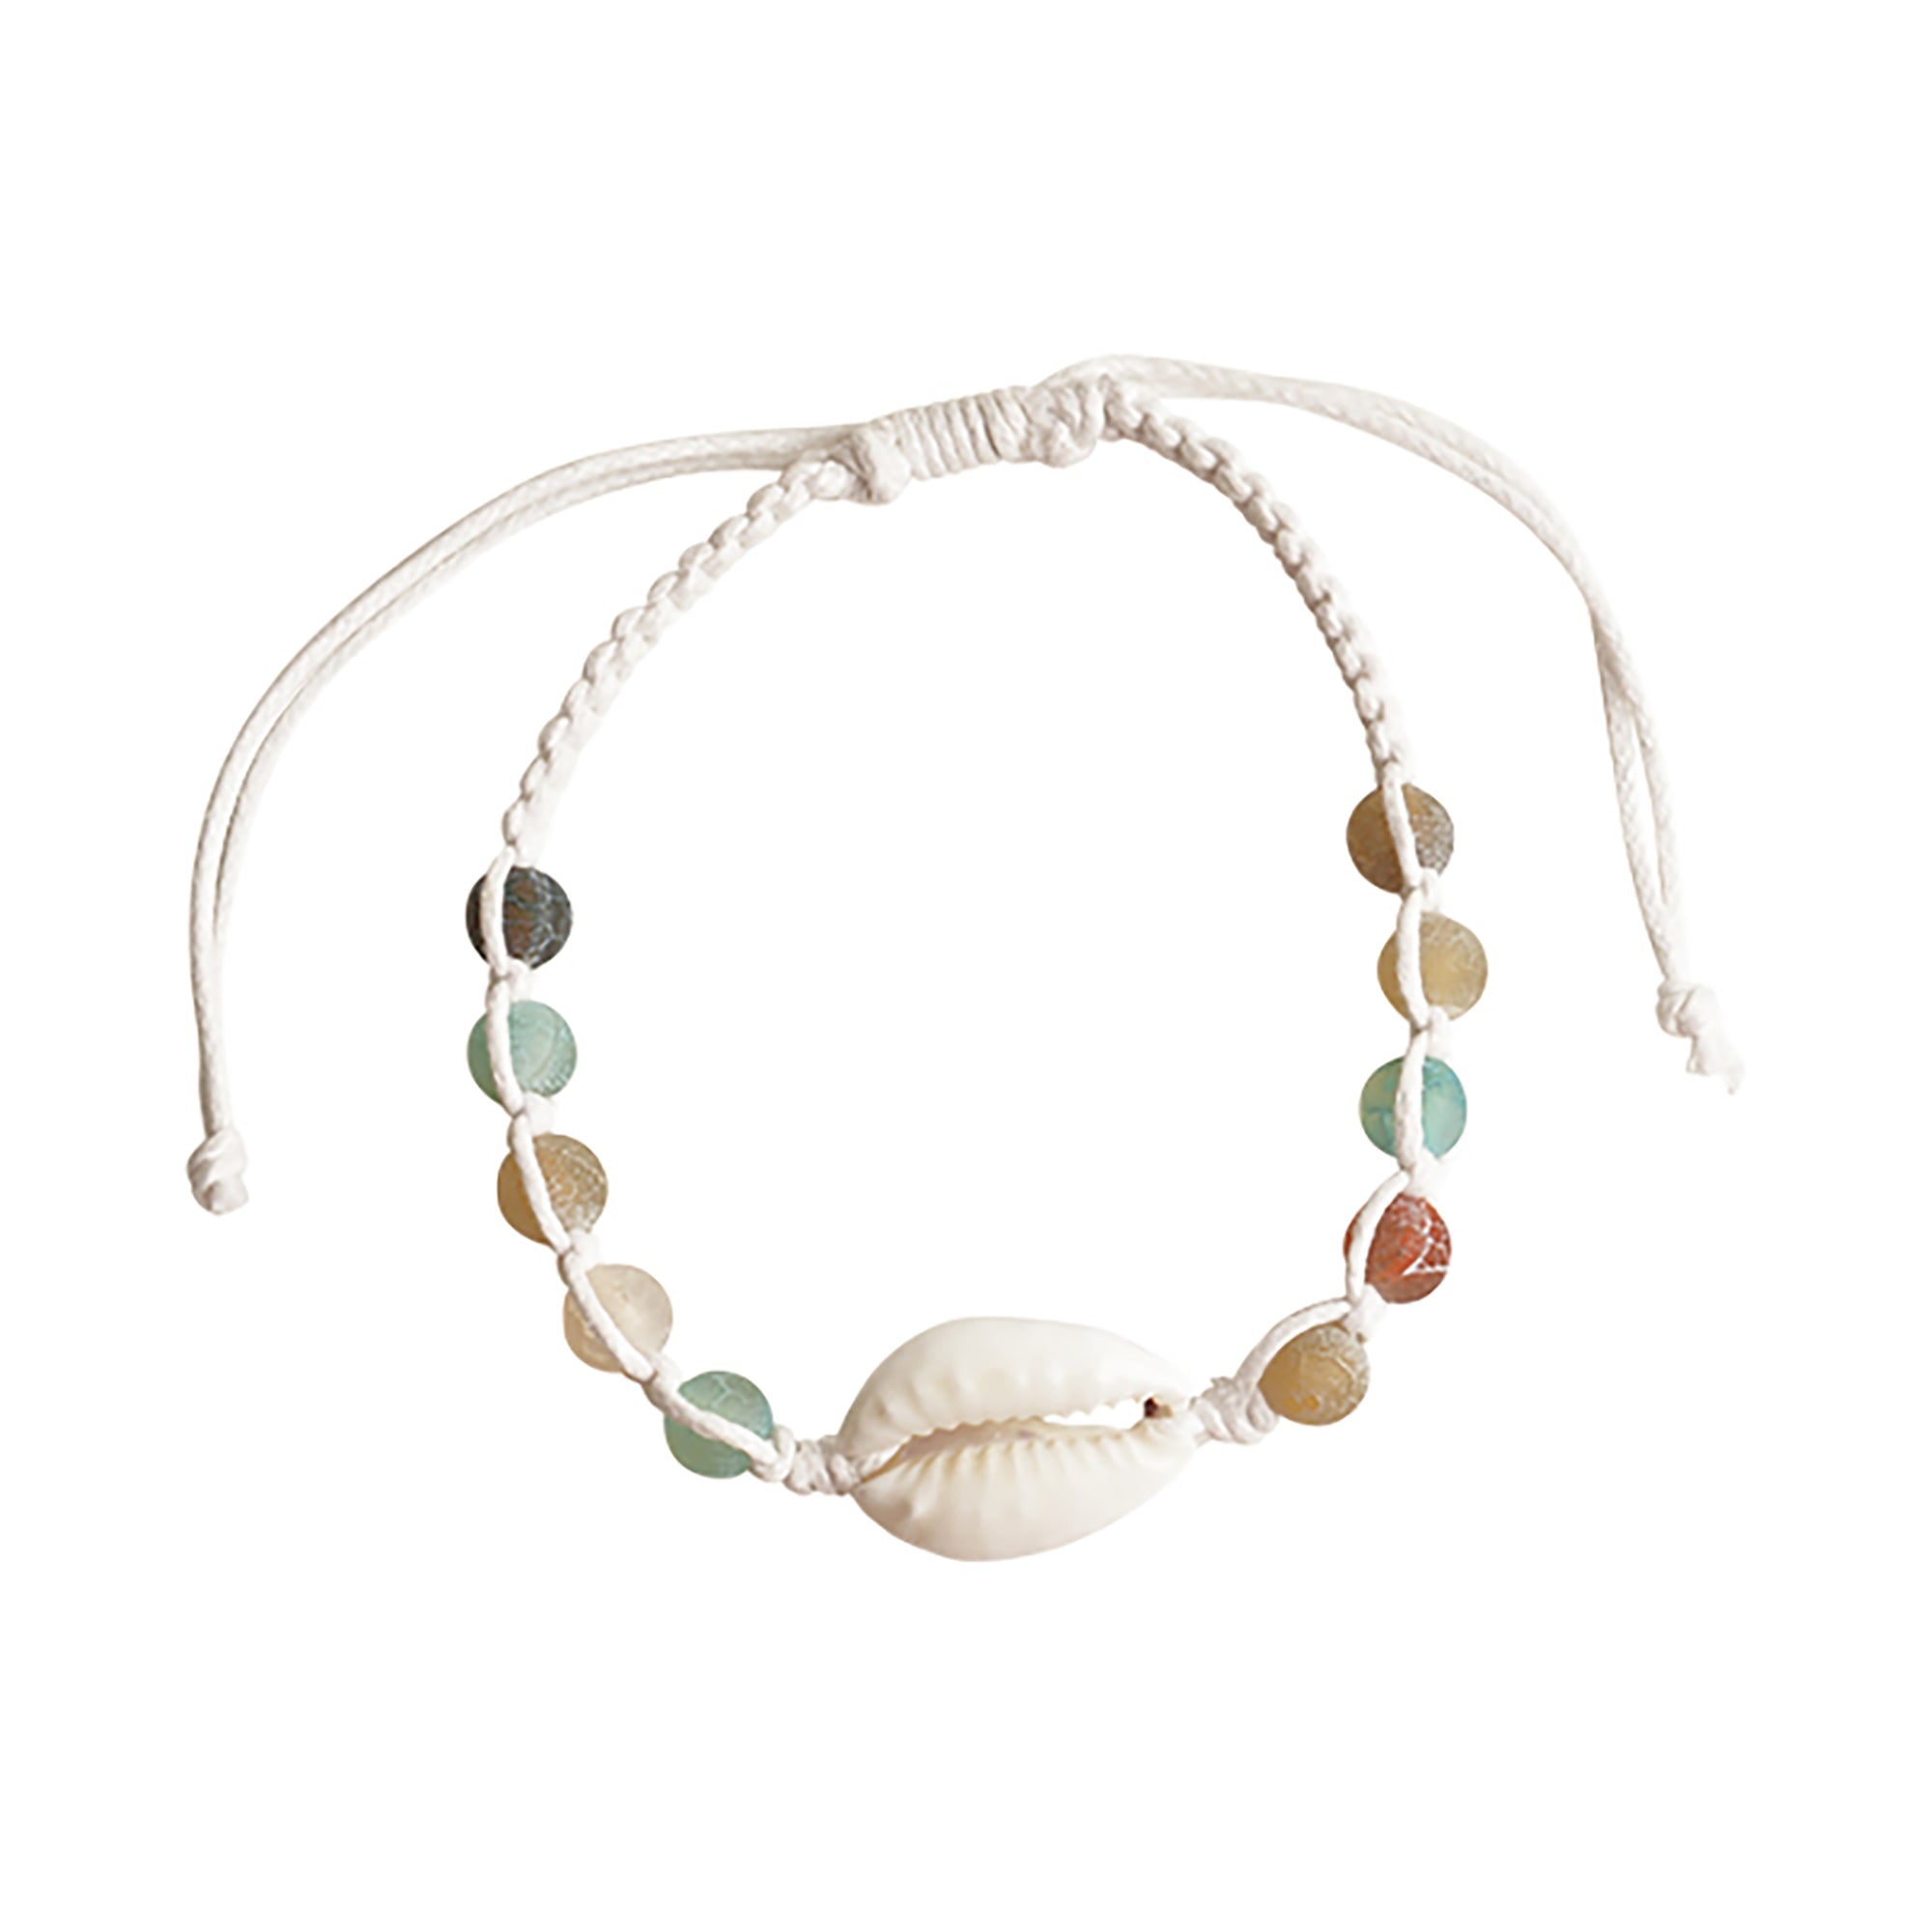 Buy Cowrie Shell Bracelet / Large Cowry Bracelet / Ocean Bracelet / Unisex  Surfer Bracelet / Boho Beach Jewelry / Natural Macrame Hemp Jewelry Online  in India - Etsy